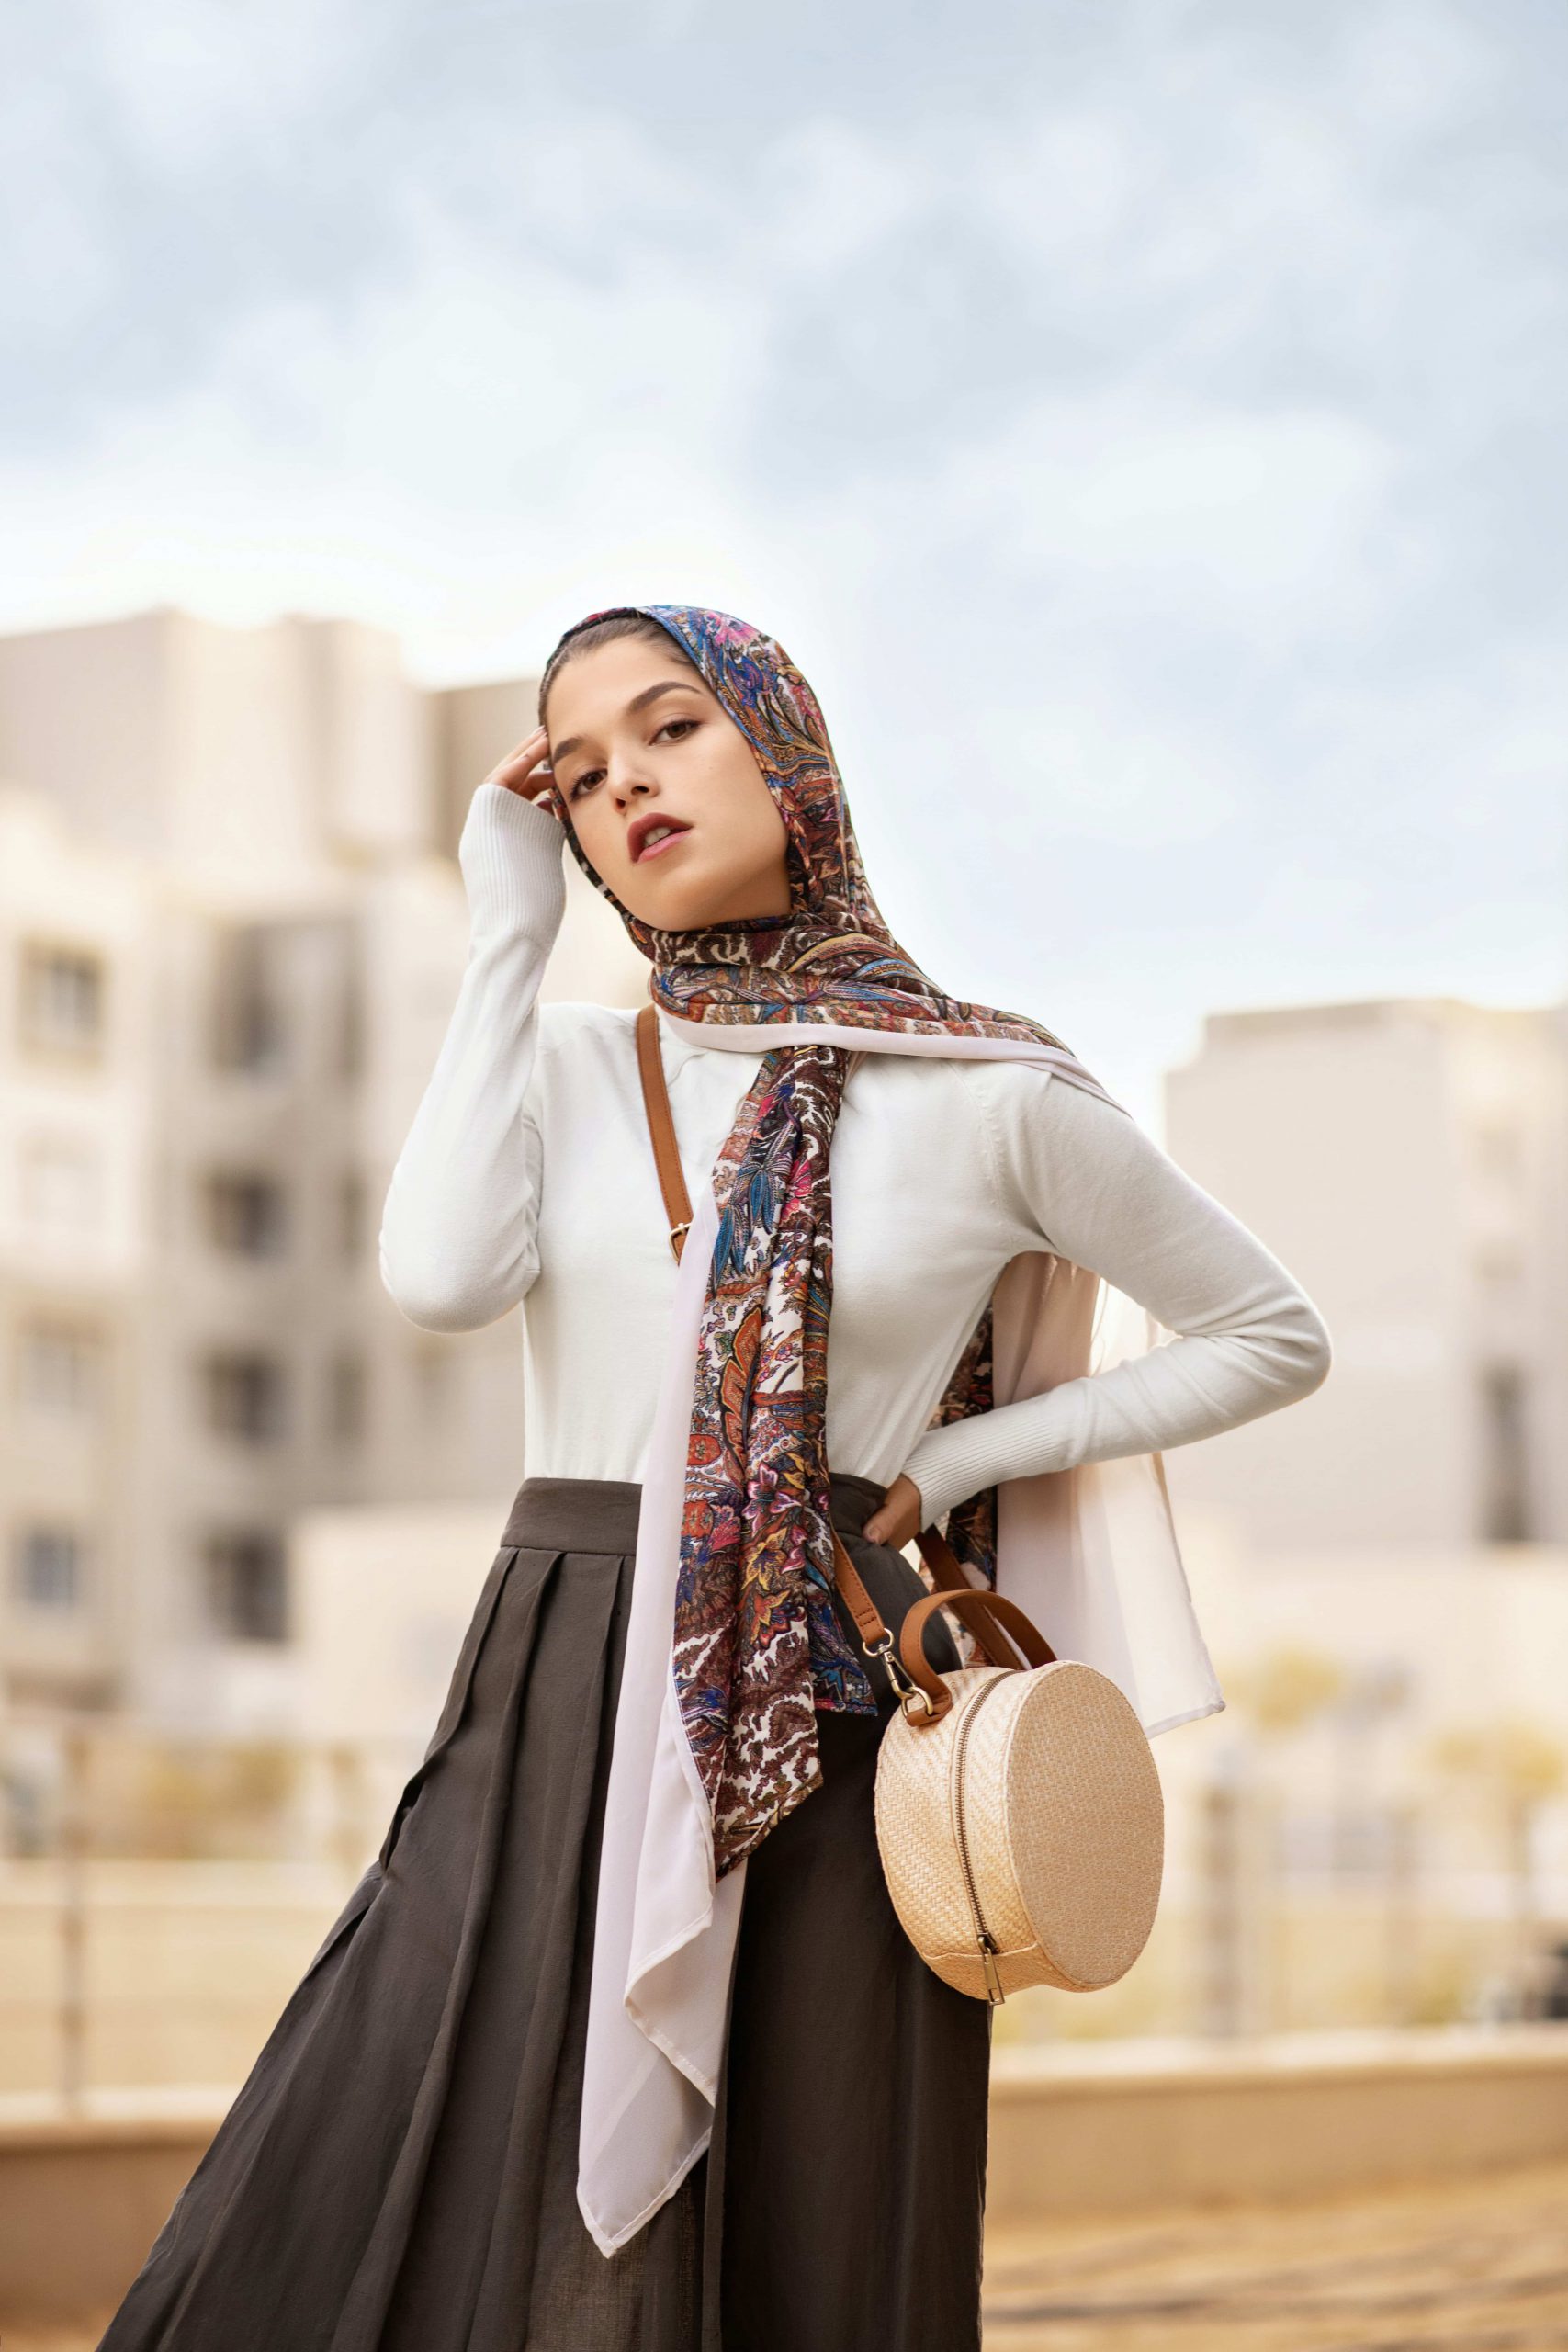 Woman wearing a headscarf